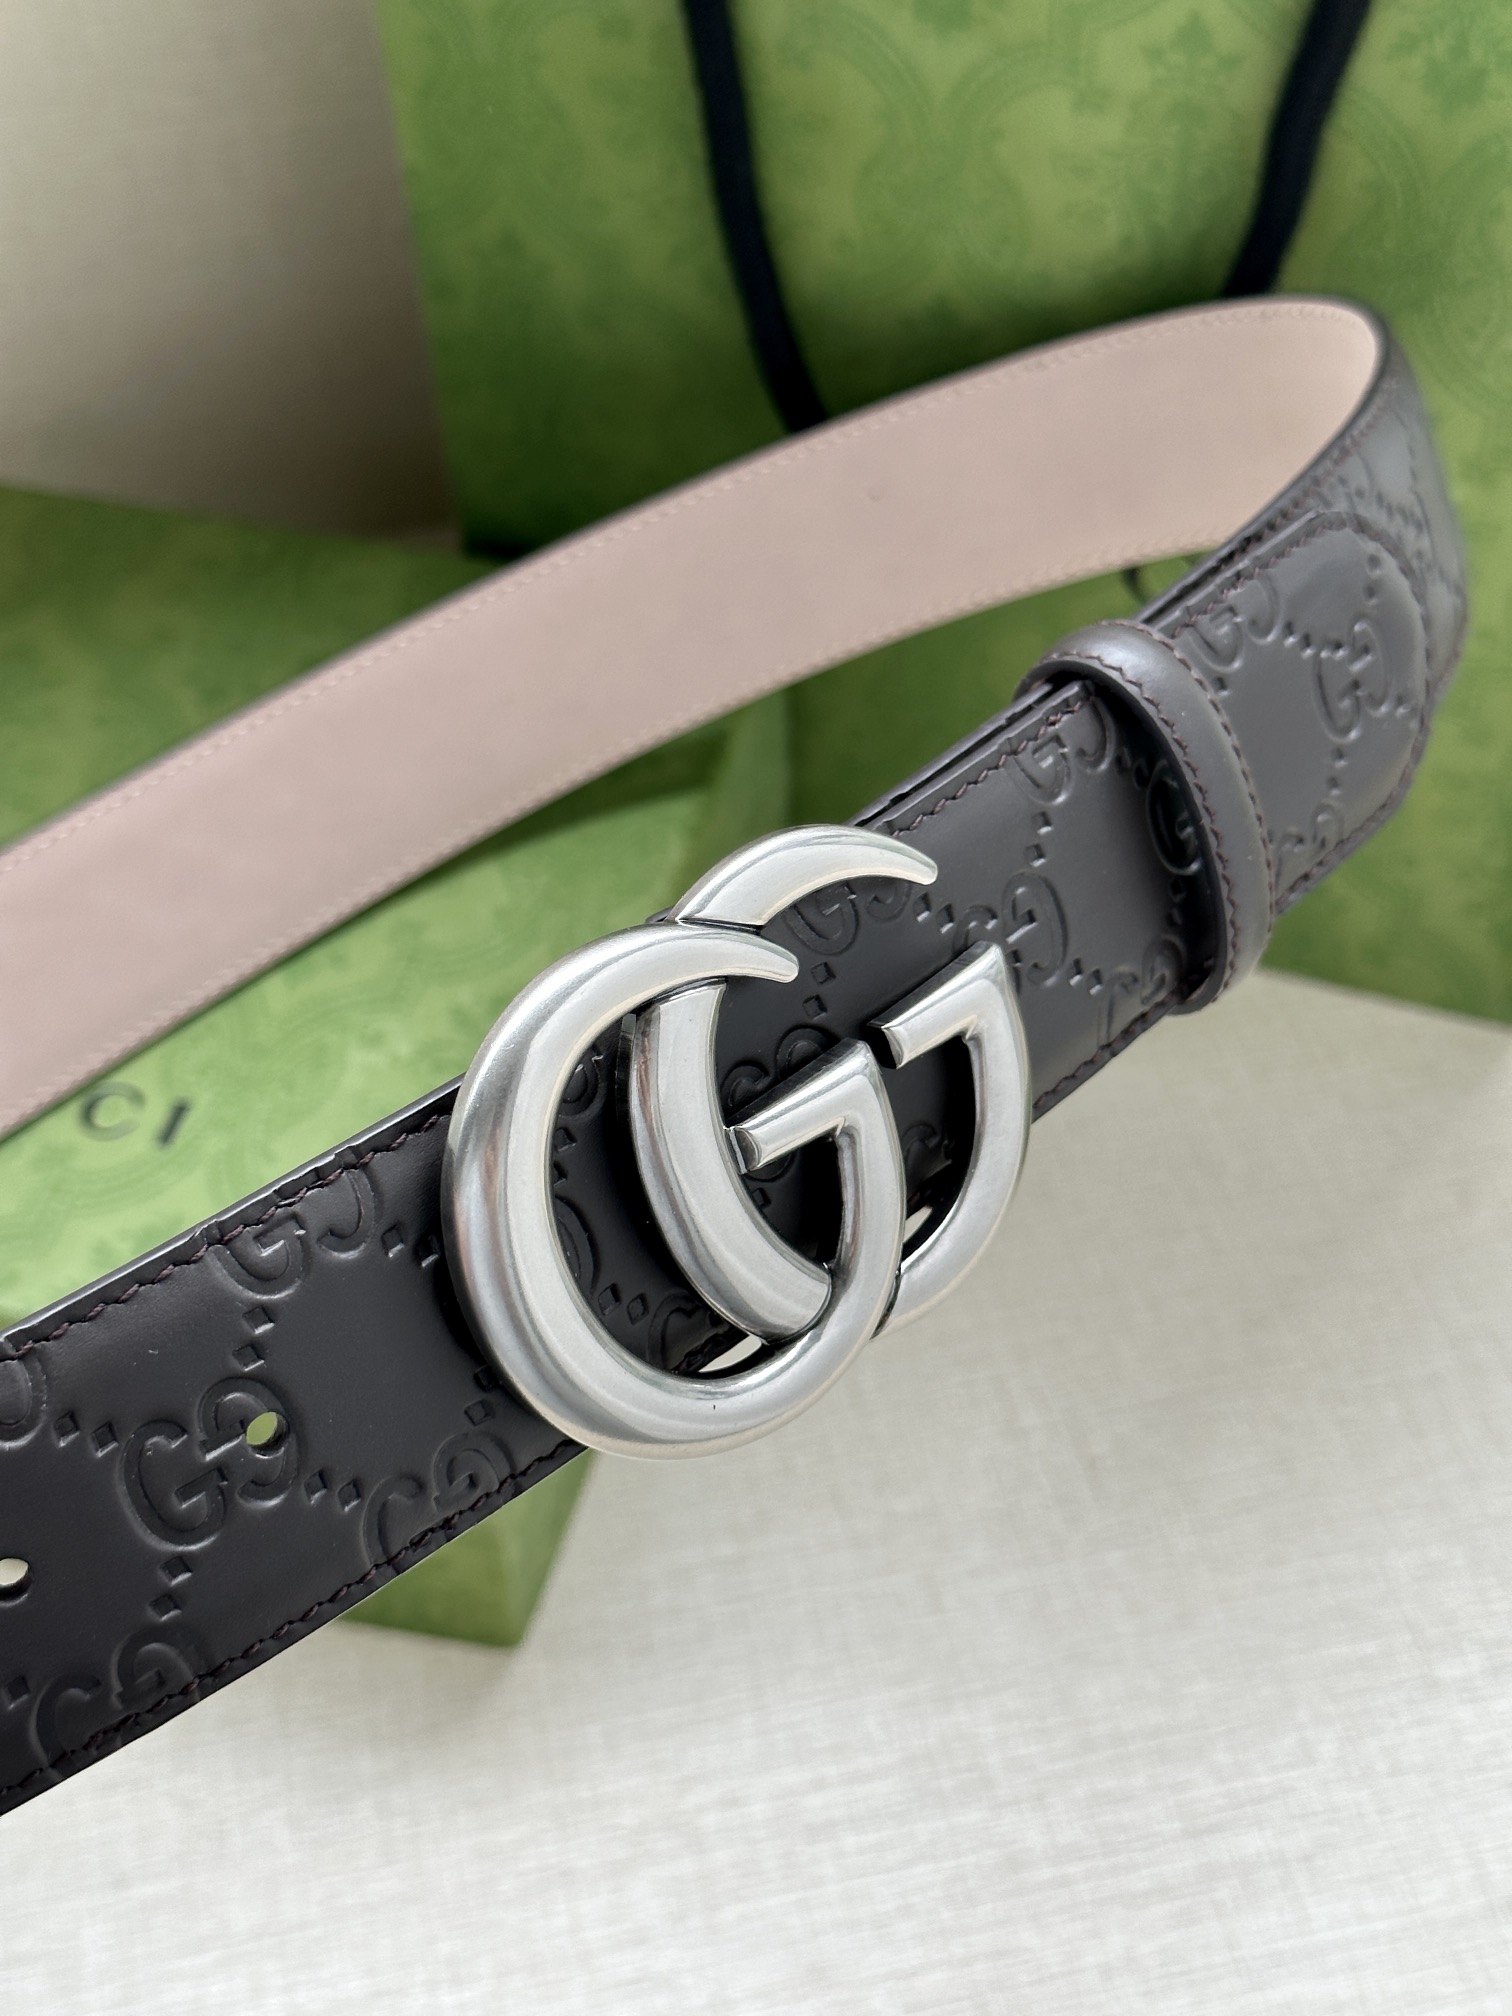 宽度4.0cm互扣式双G带扣腰带采用热压印技术的GucciSignature皮革精制而成触感厚实印花图案